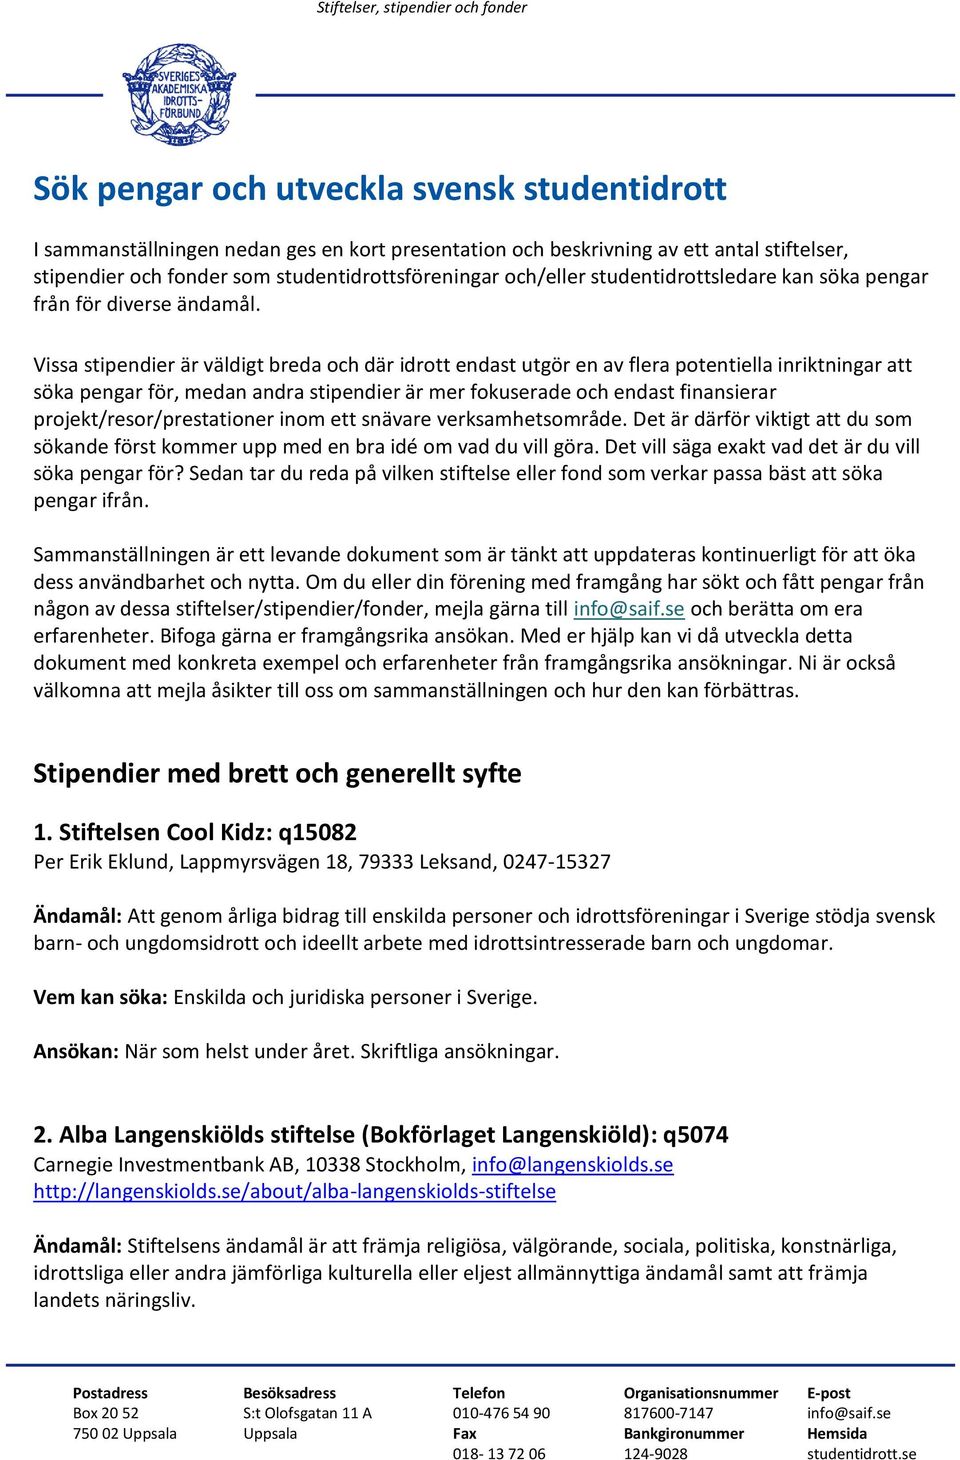 Sök pengar och utveckla svensk studentidrott - PDF Free Download